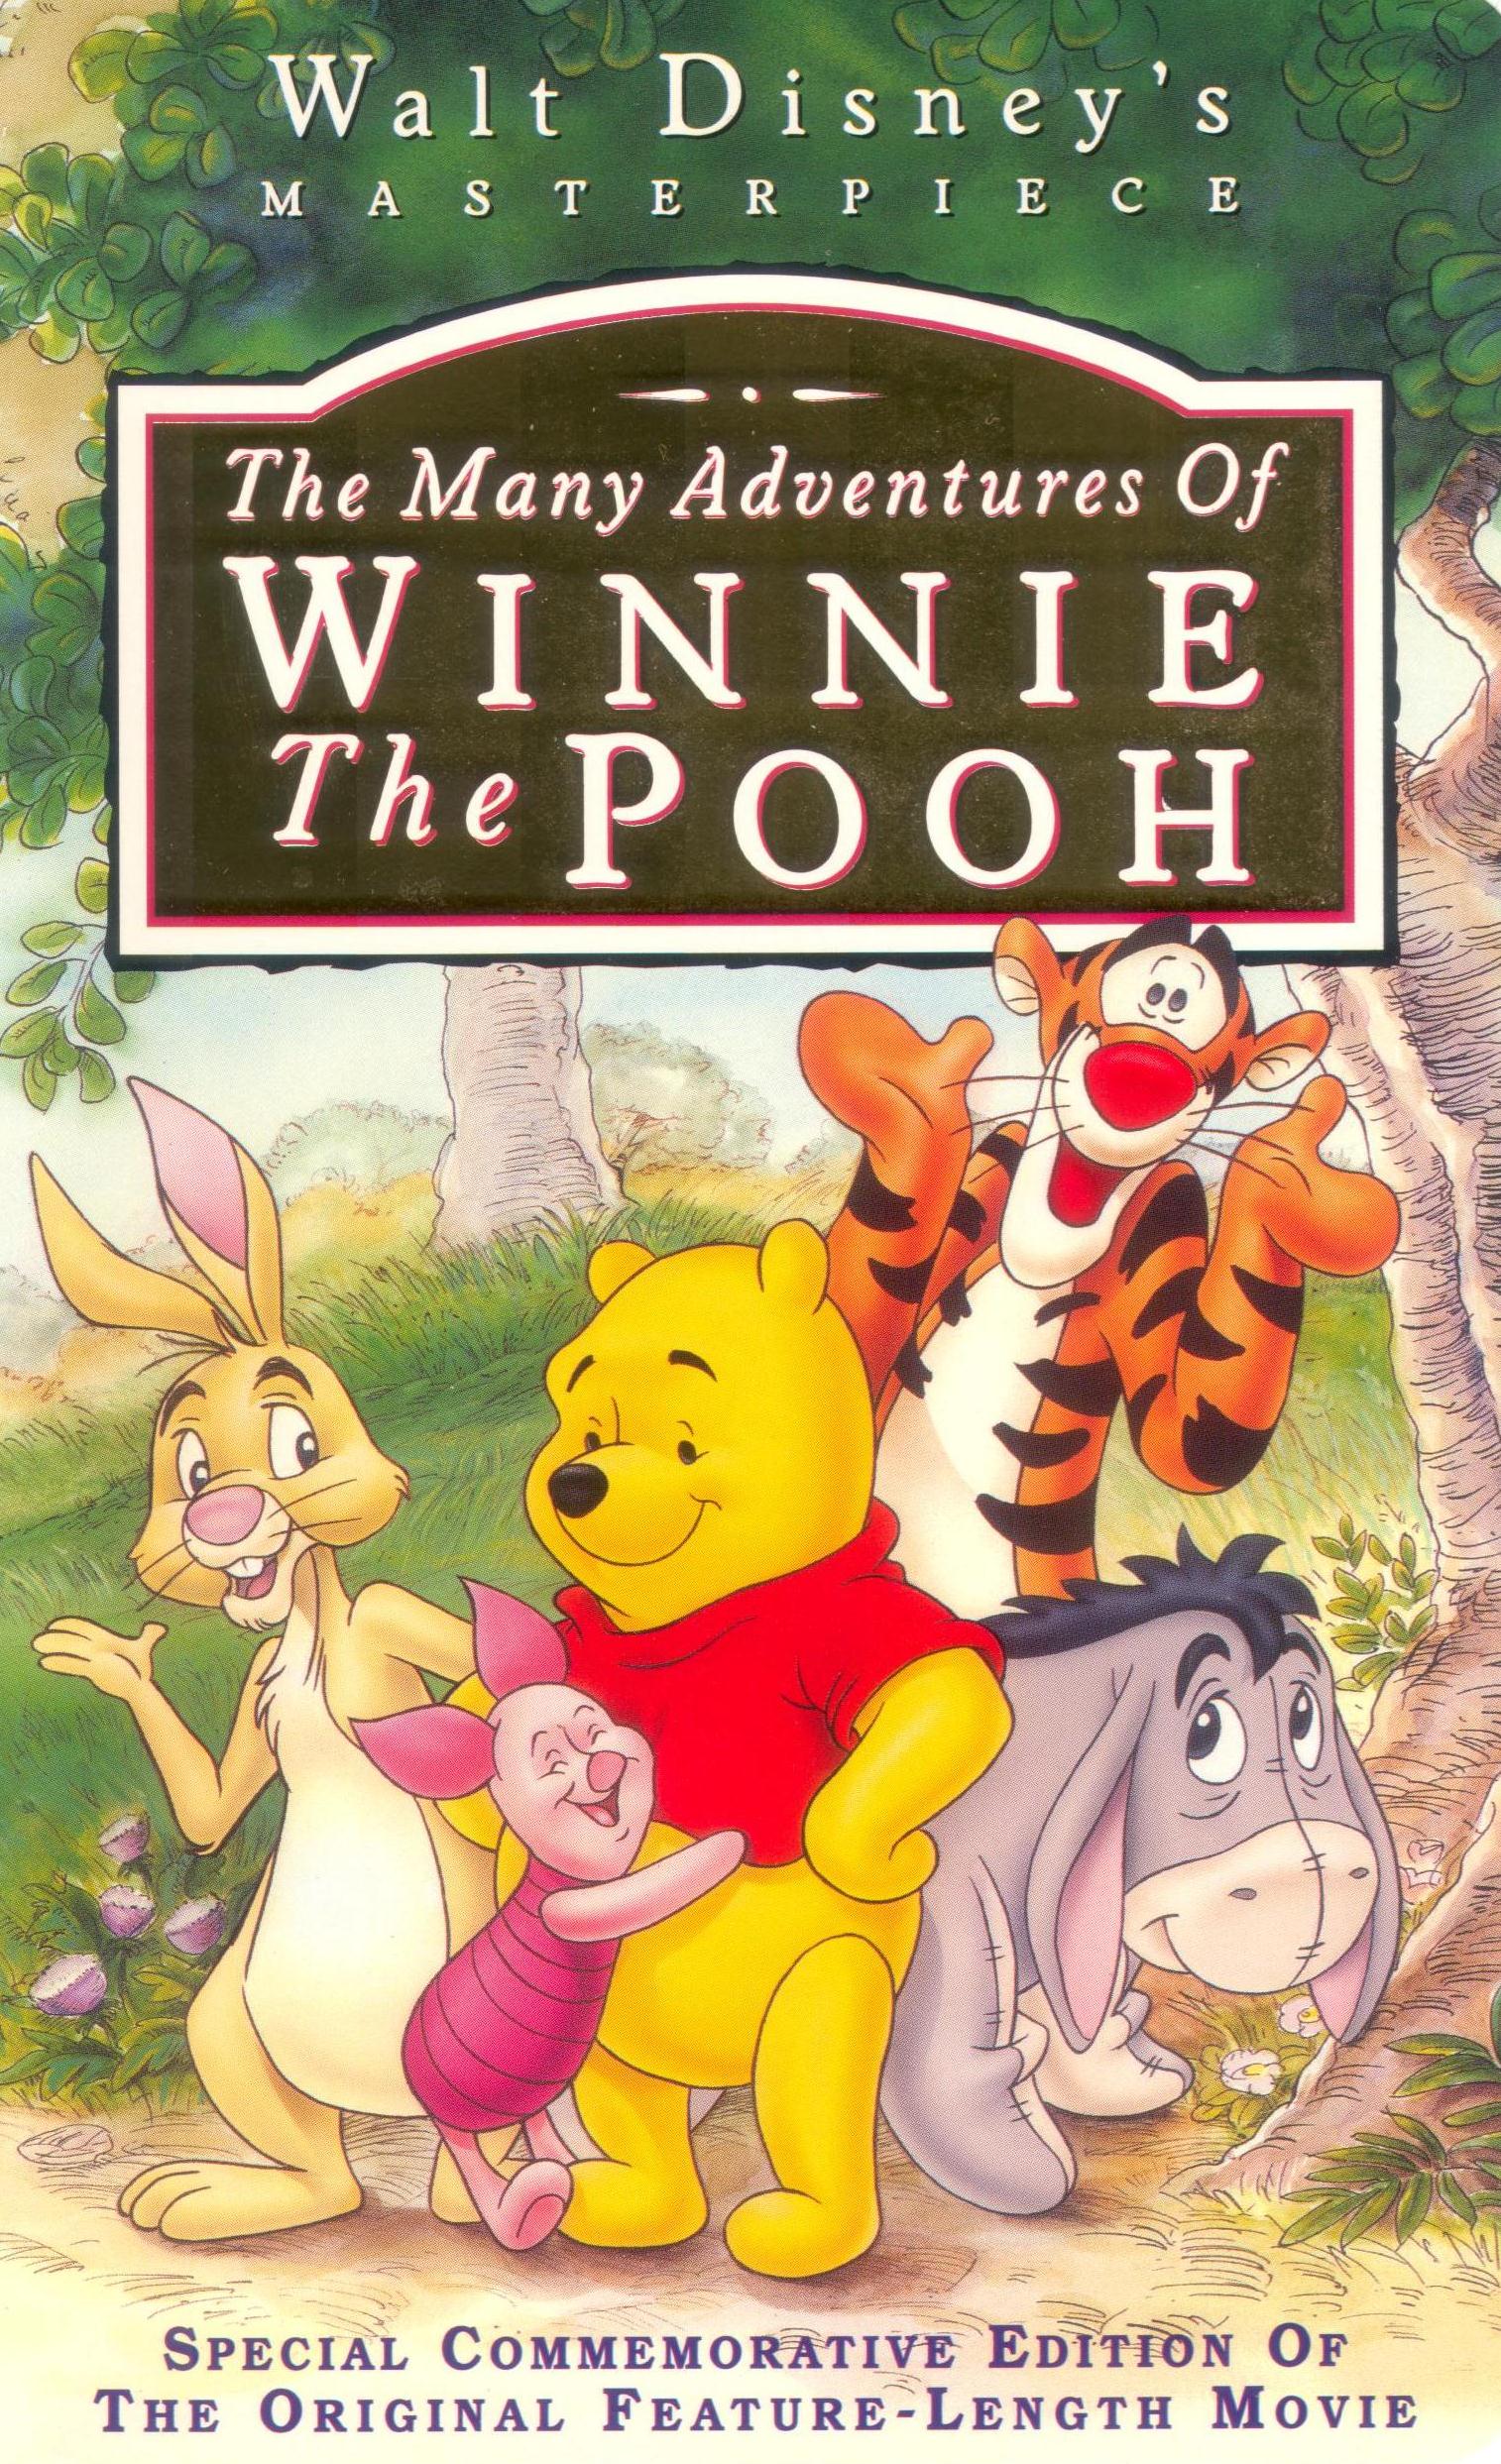 Winnie the pooh adventures. Приключения Винни пух Уолт Дисней. Приключения Винни пуха 1987. Приключения Винни пуха 1977. Винни пух Дисней.